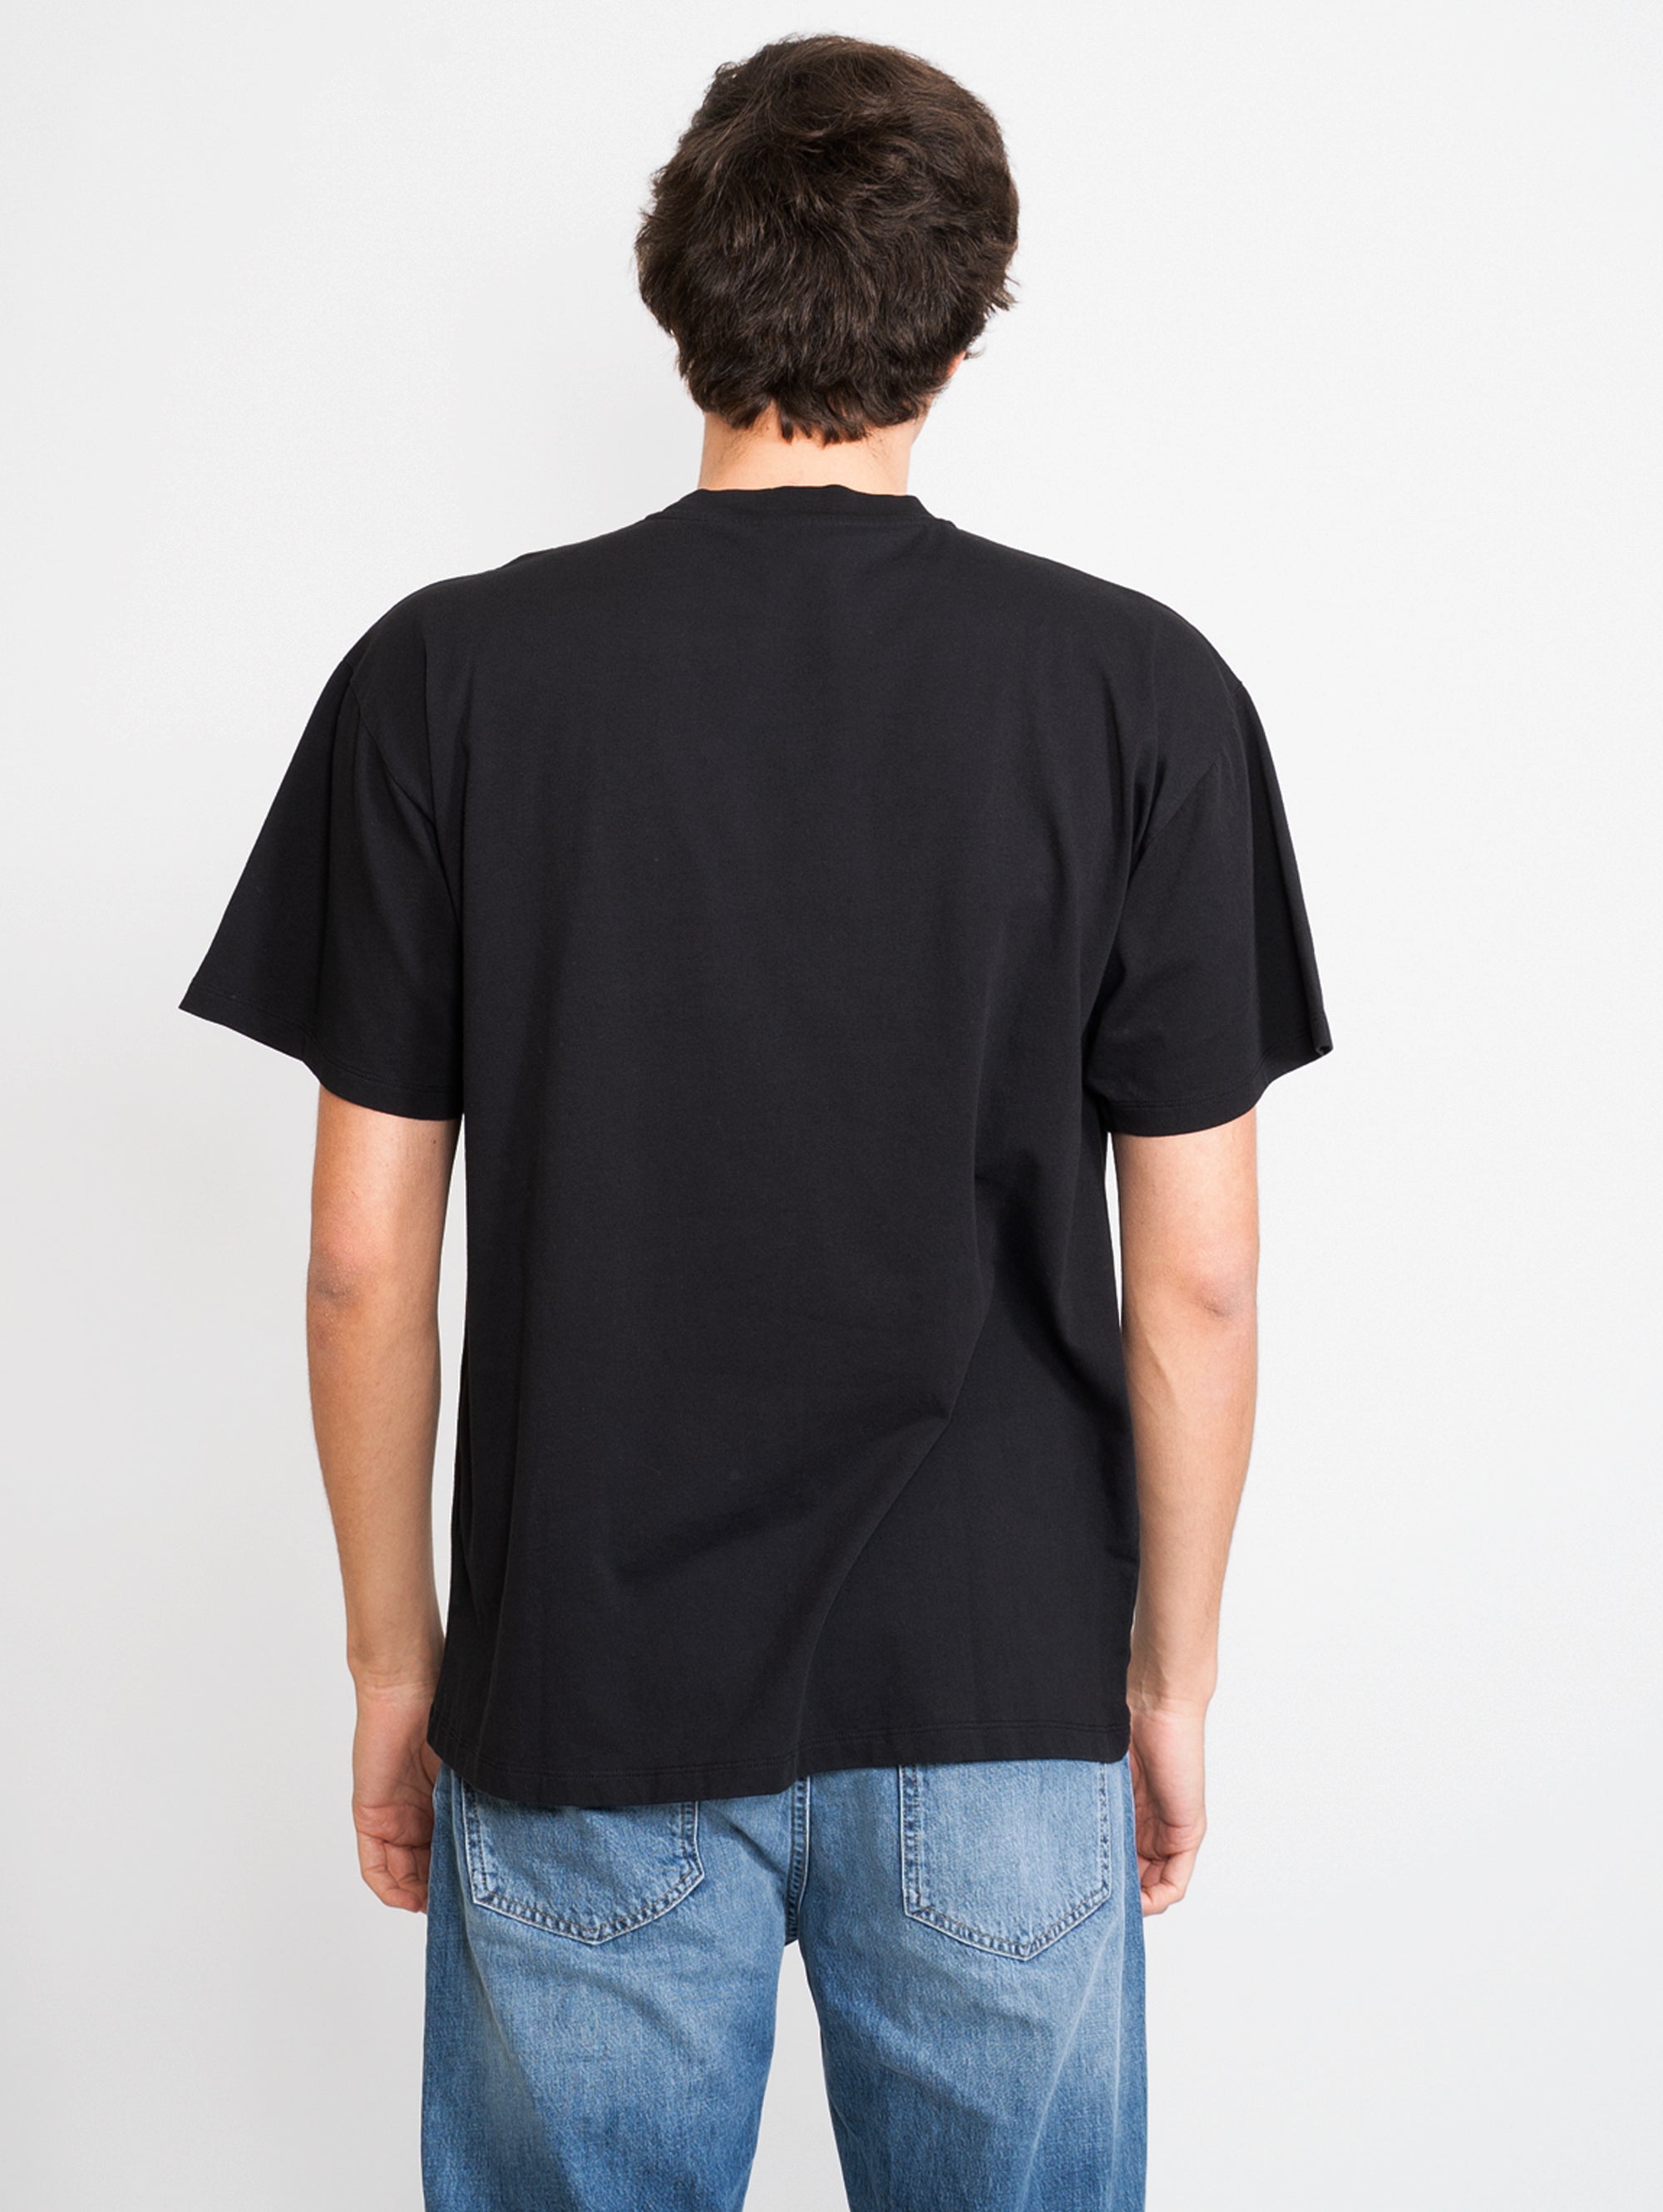 T-Shirt mit schwarzem Aufdruck